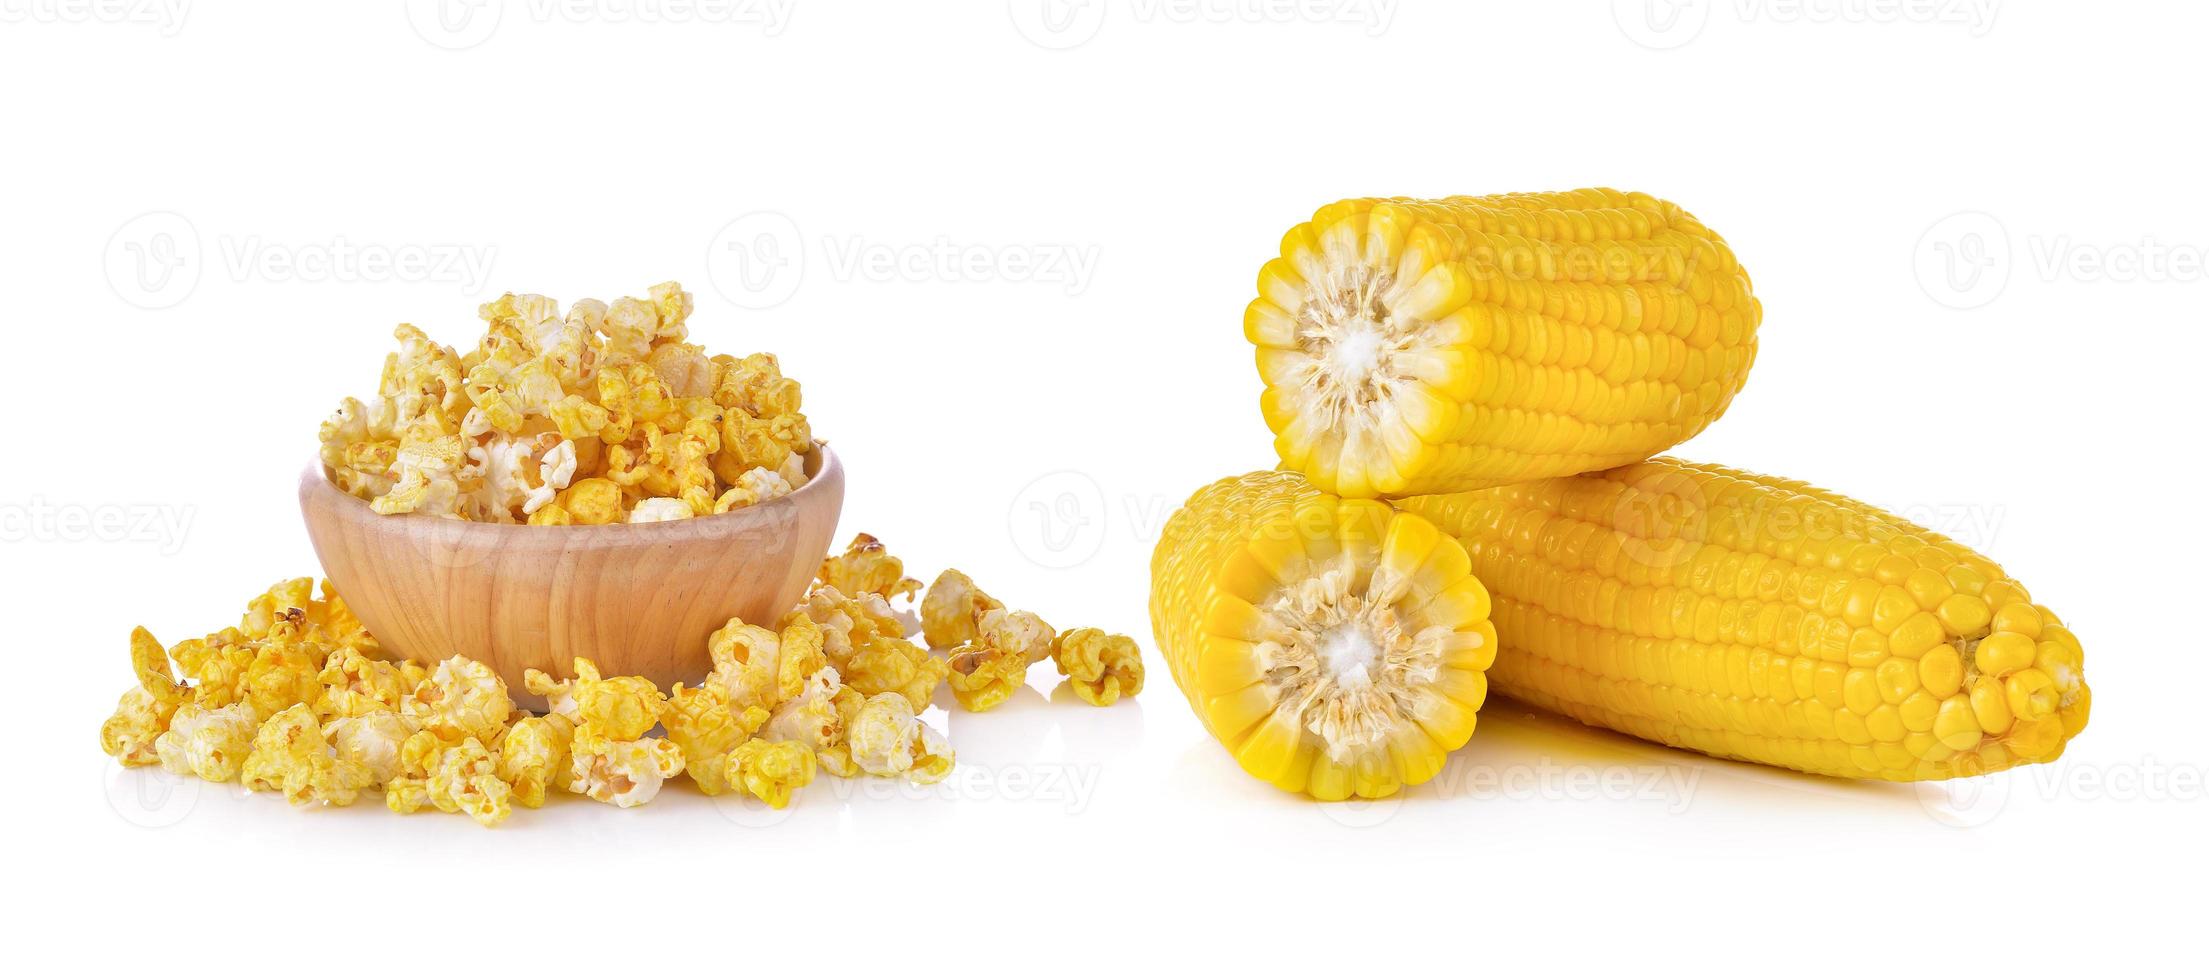 maíz y palomitas de maíz sobre fondo blanco foto